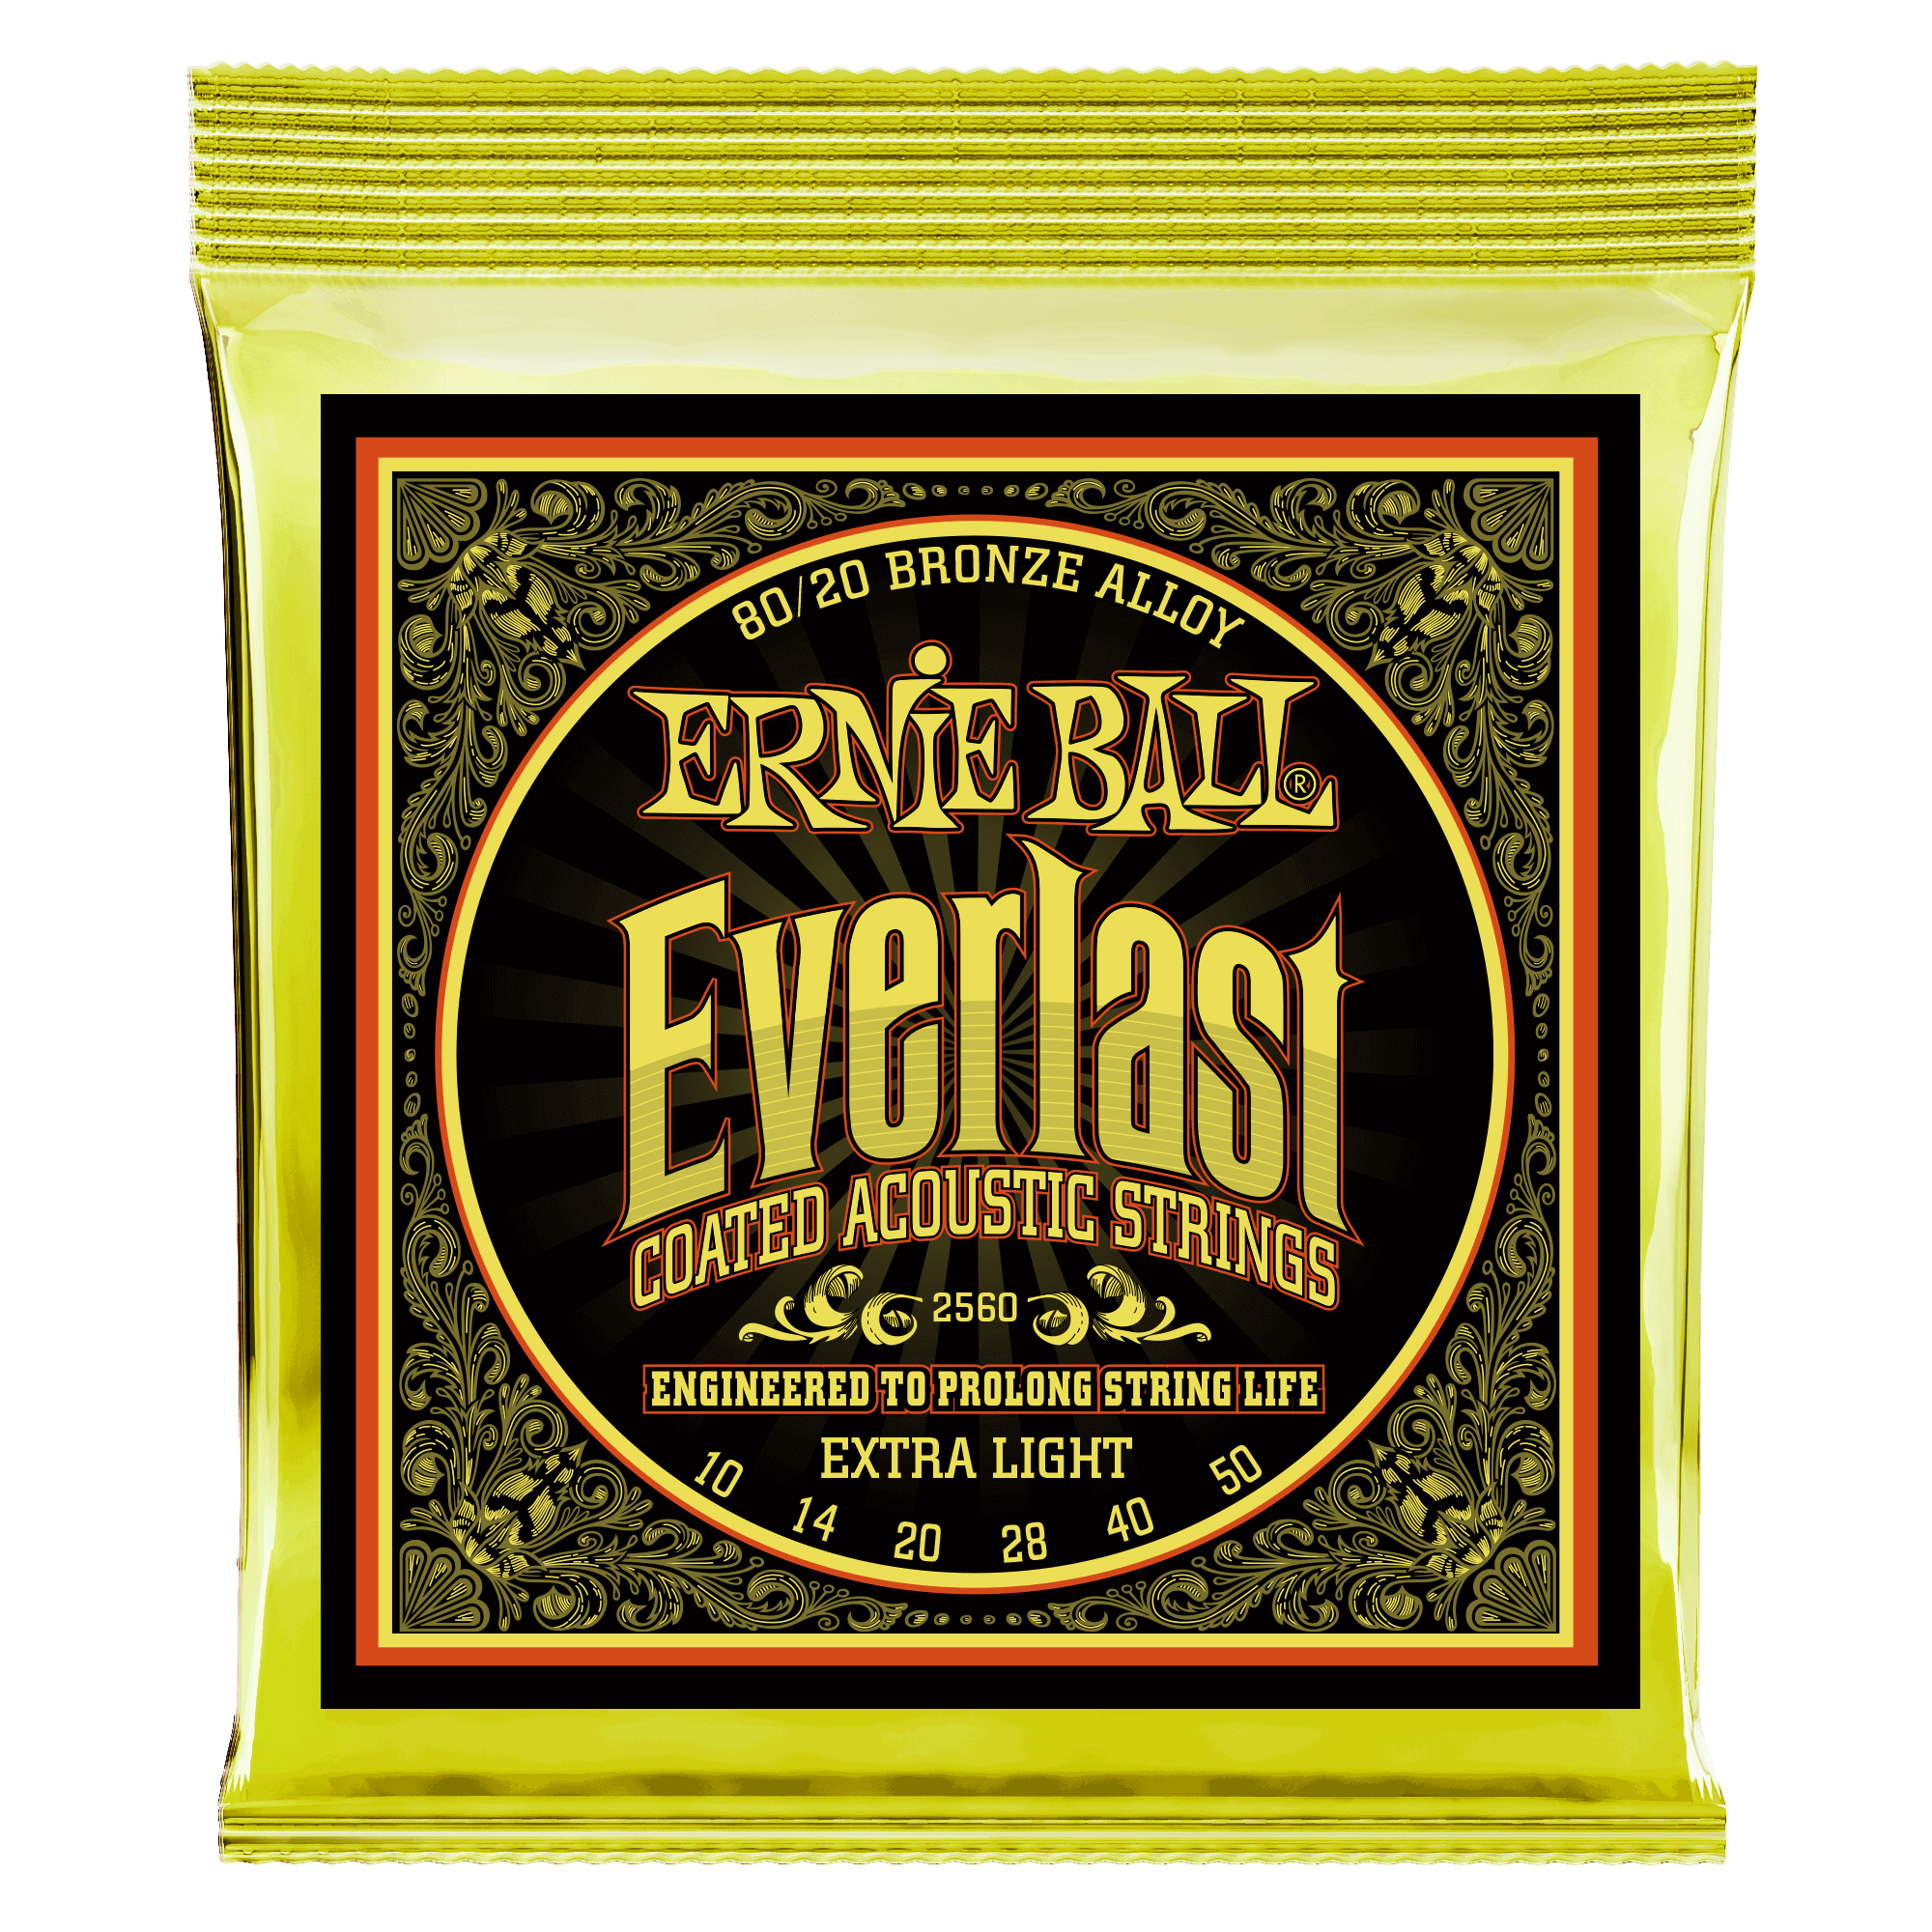 Ernie Ball - Encordado para Guitarra Acustica Everlast Mod.2560_7